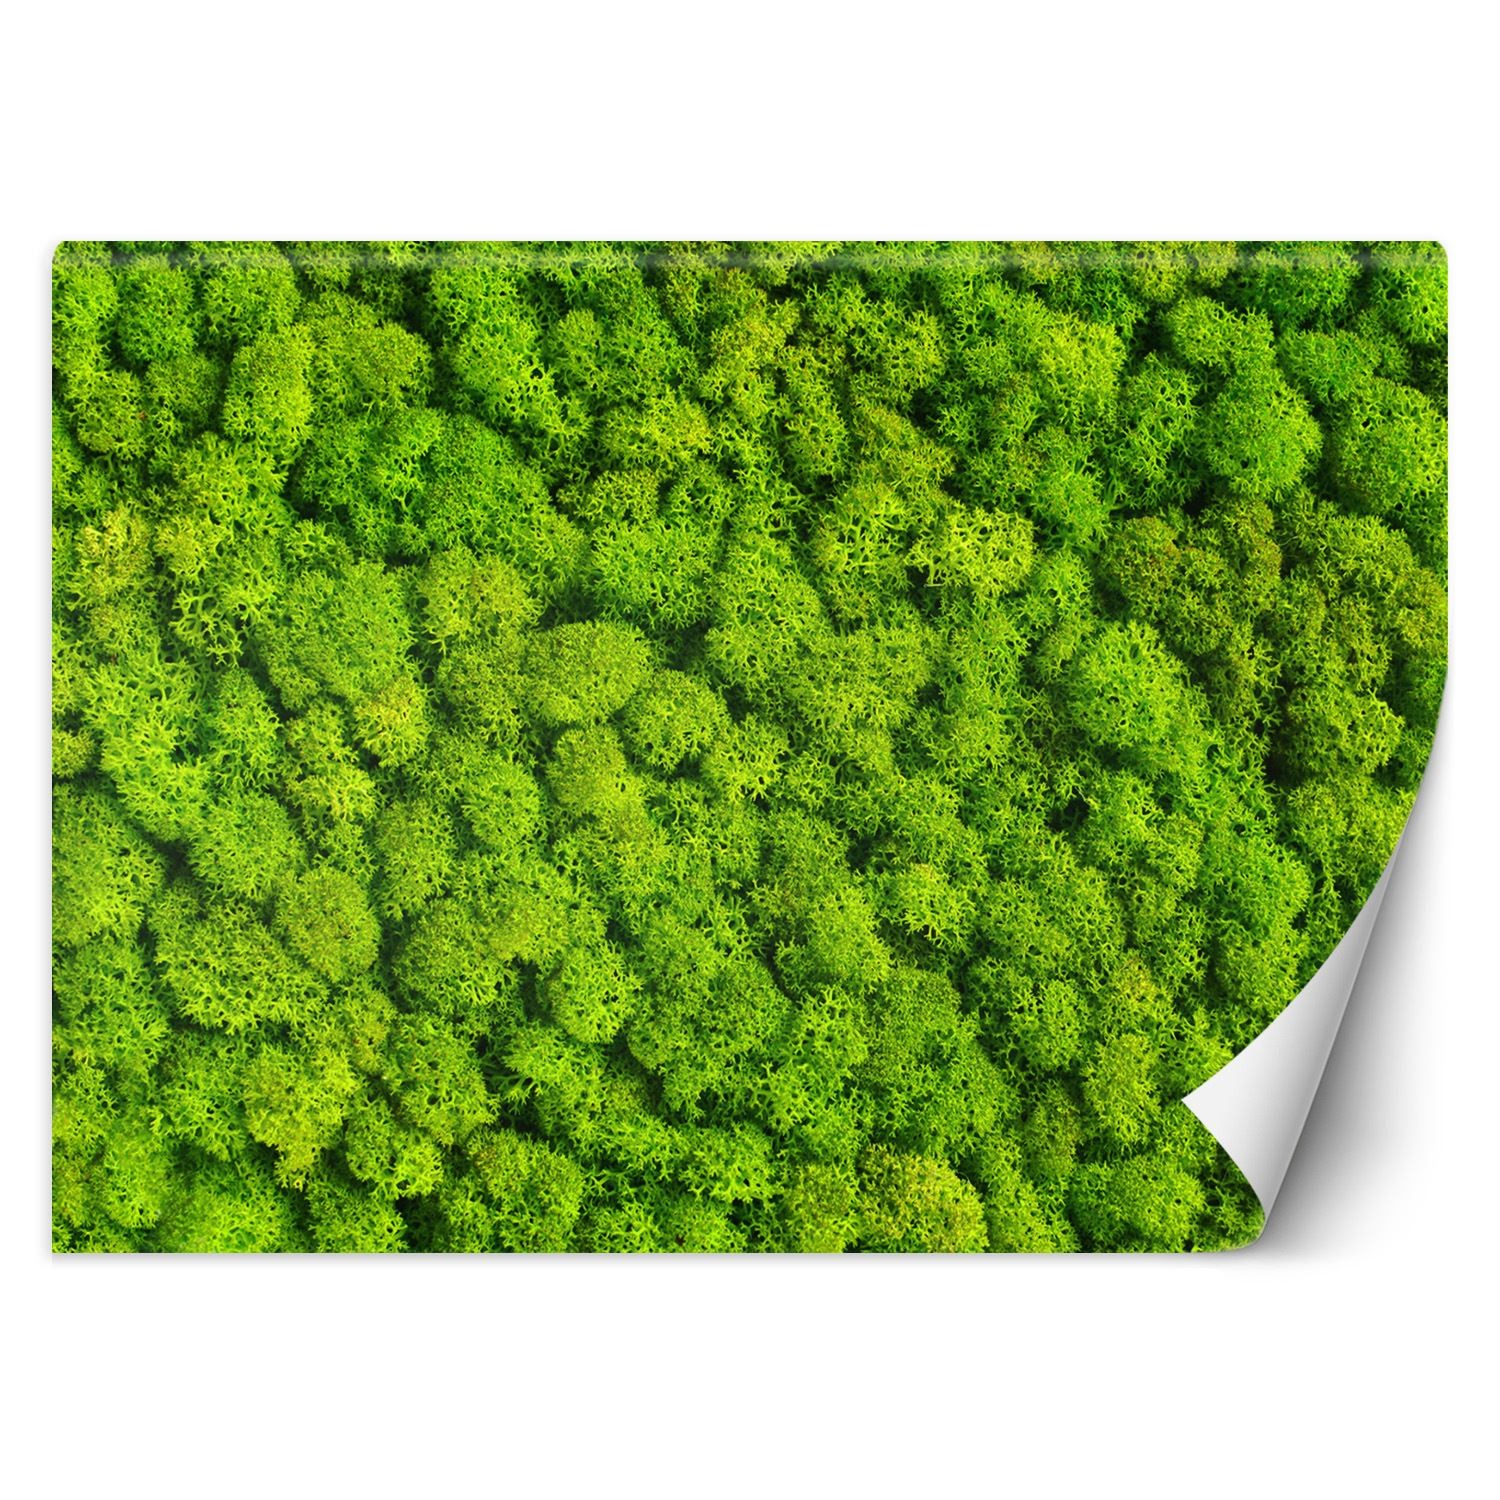 Trend24 – Behang – Weevil Moss – Vliesbehang – Behang Woonkamer – Fotobehang – 450×315 cm – Incl. behanglijm